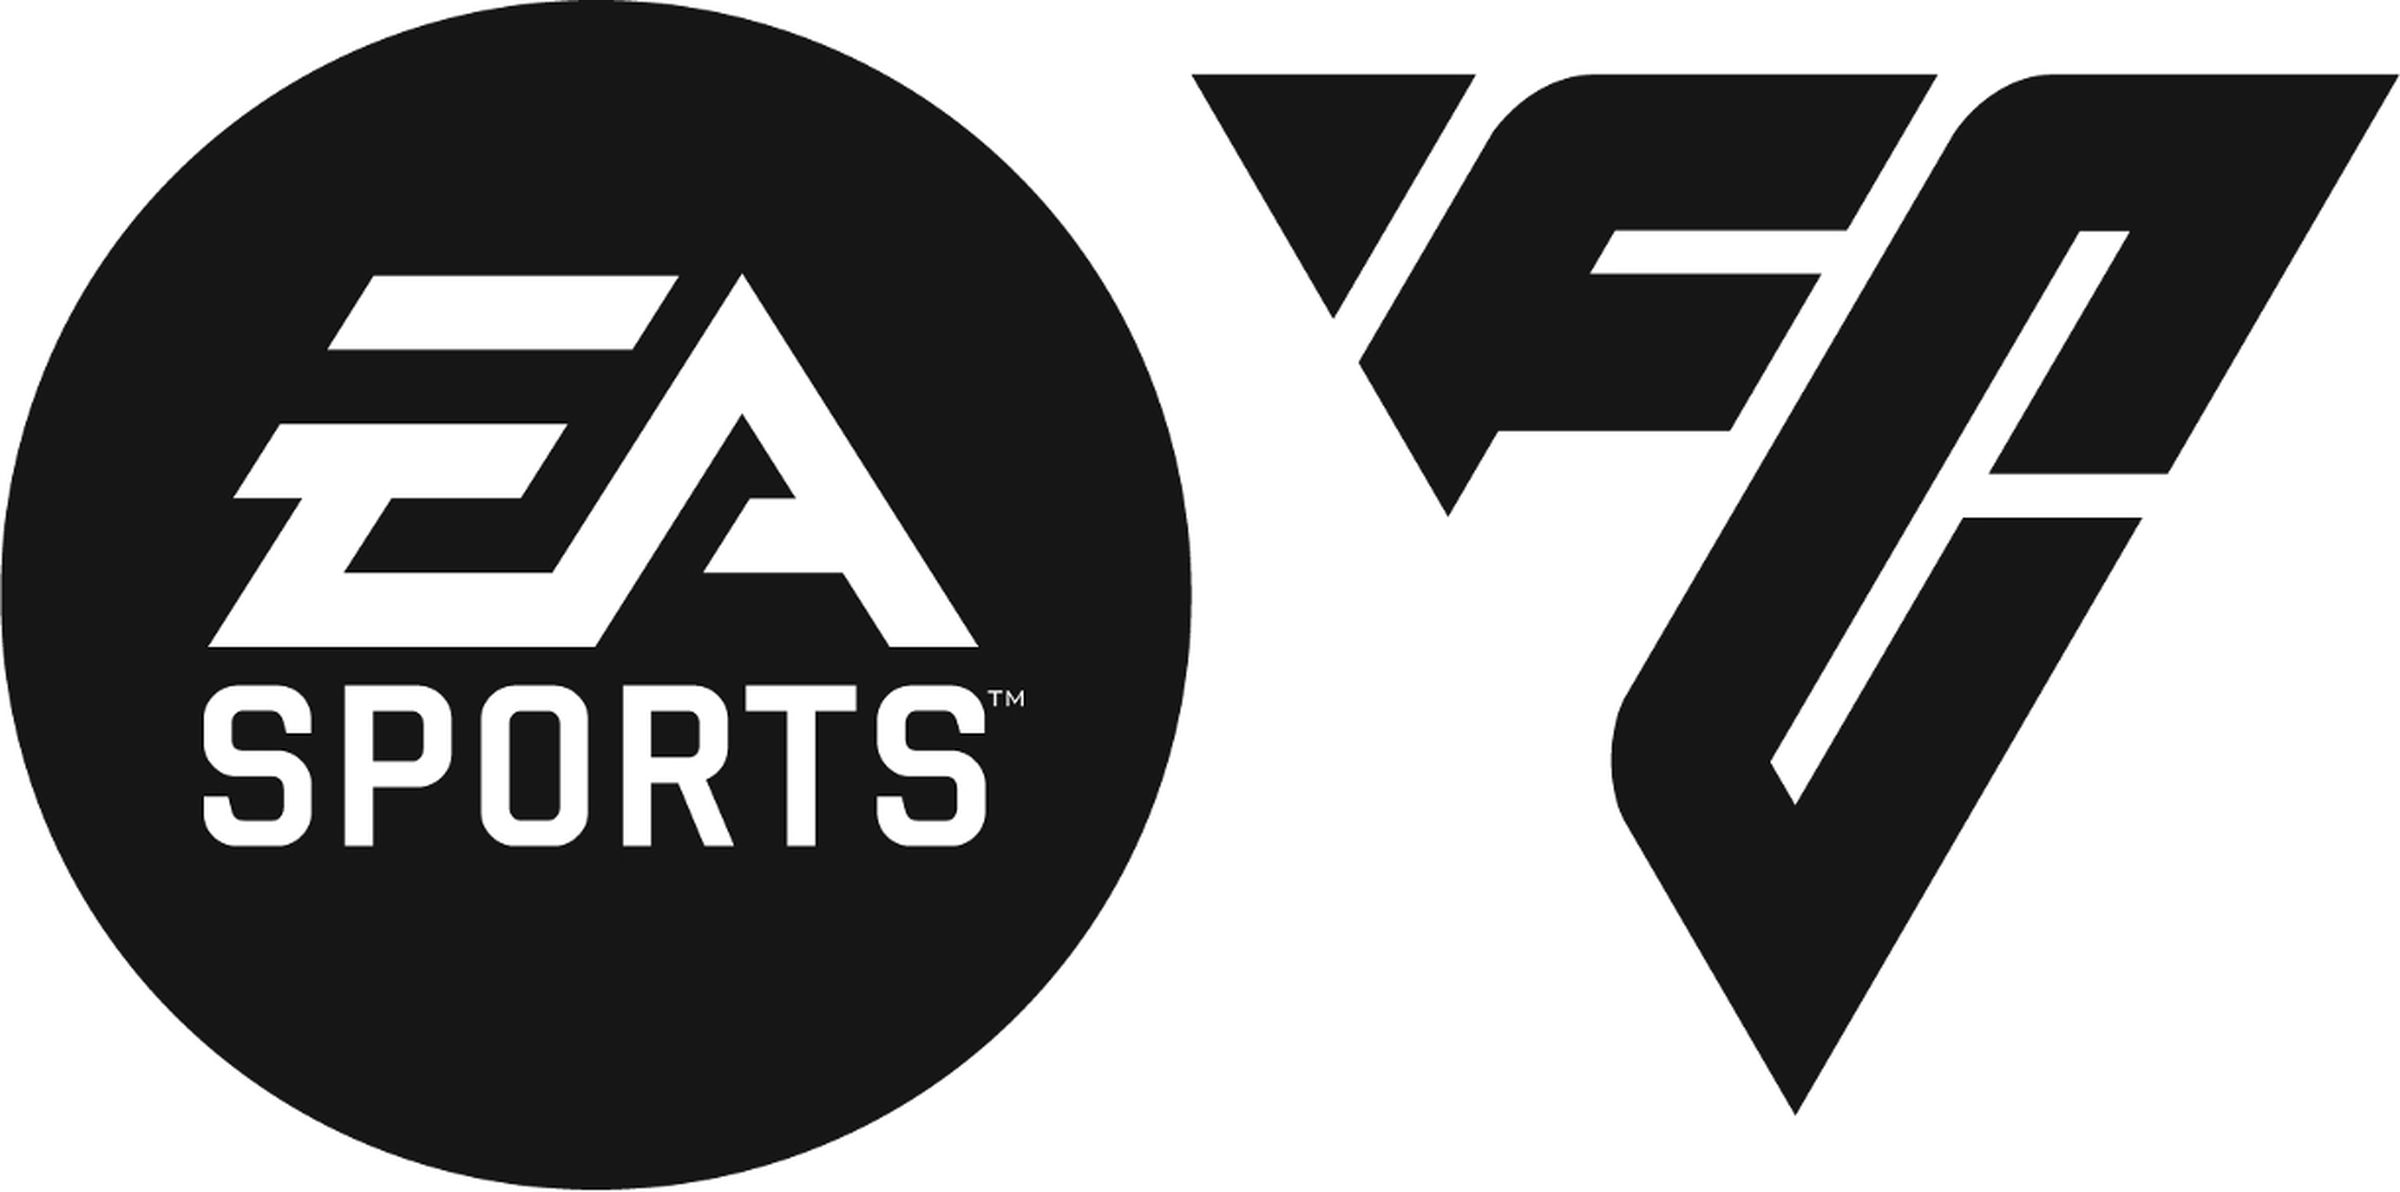 The EA Sports FC logo.